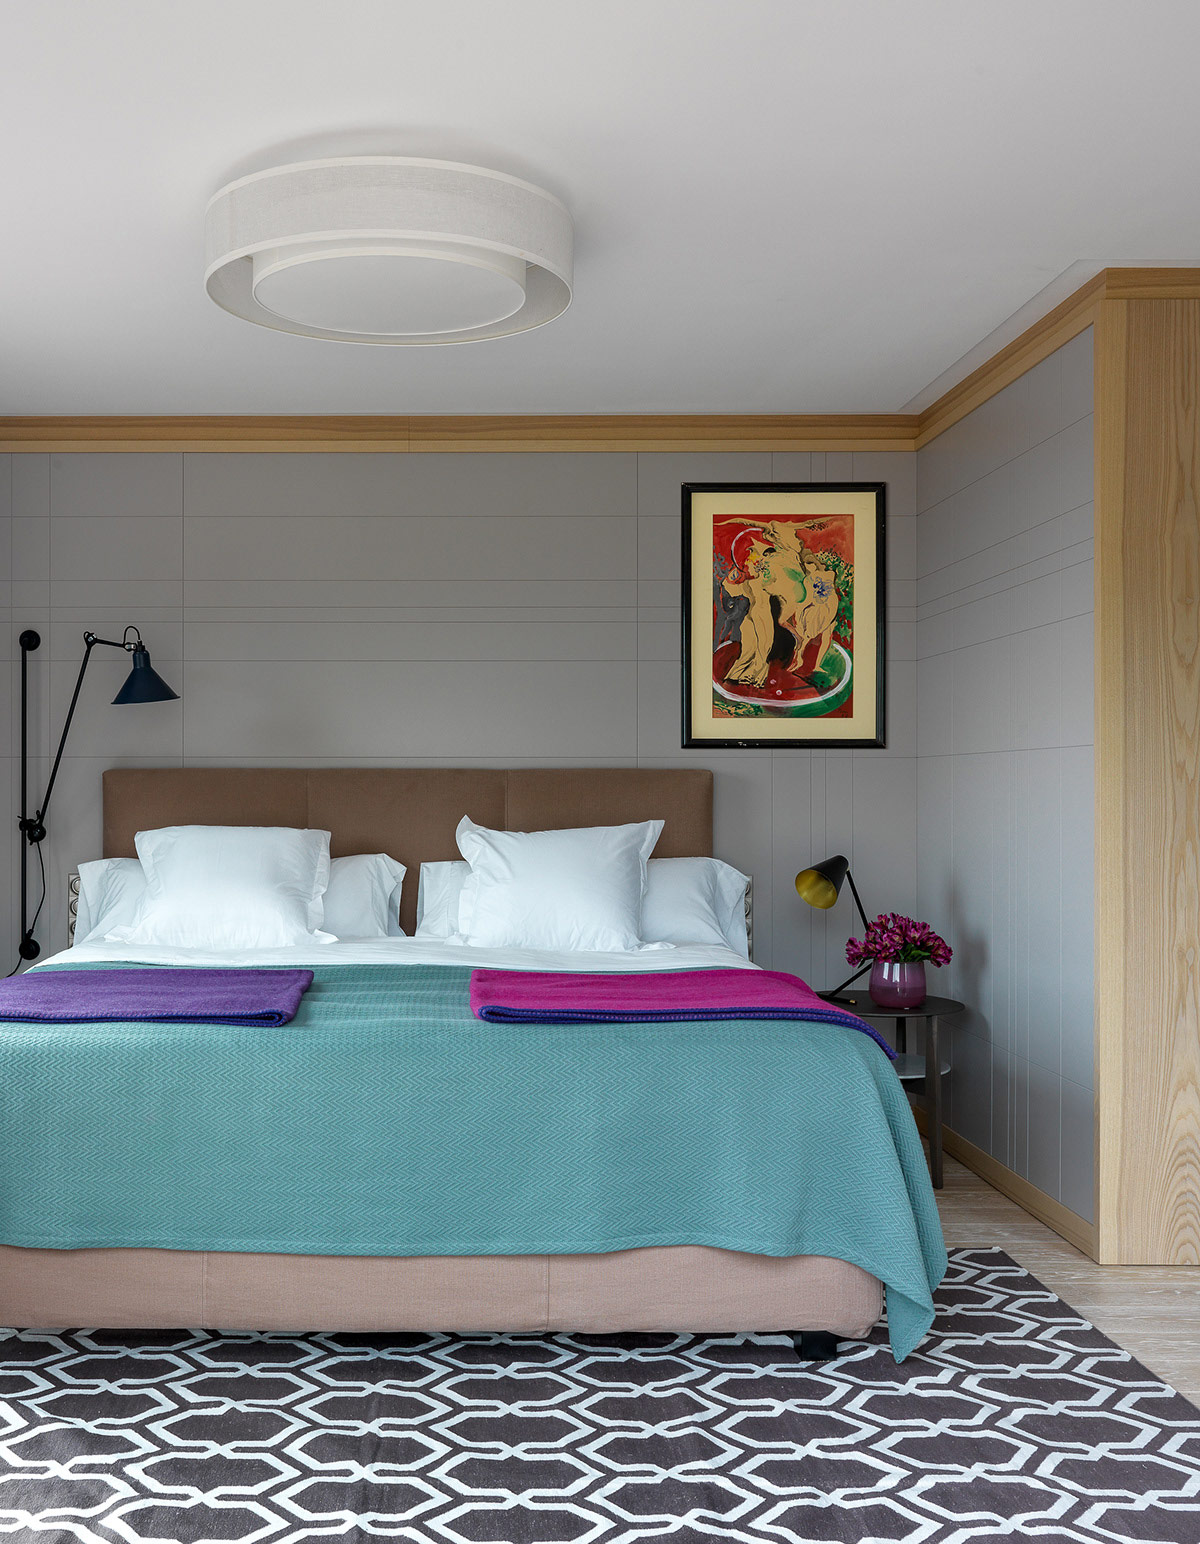 Thiết kế phòng ngủ đẹp với ga trải giường nổi bật